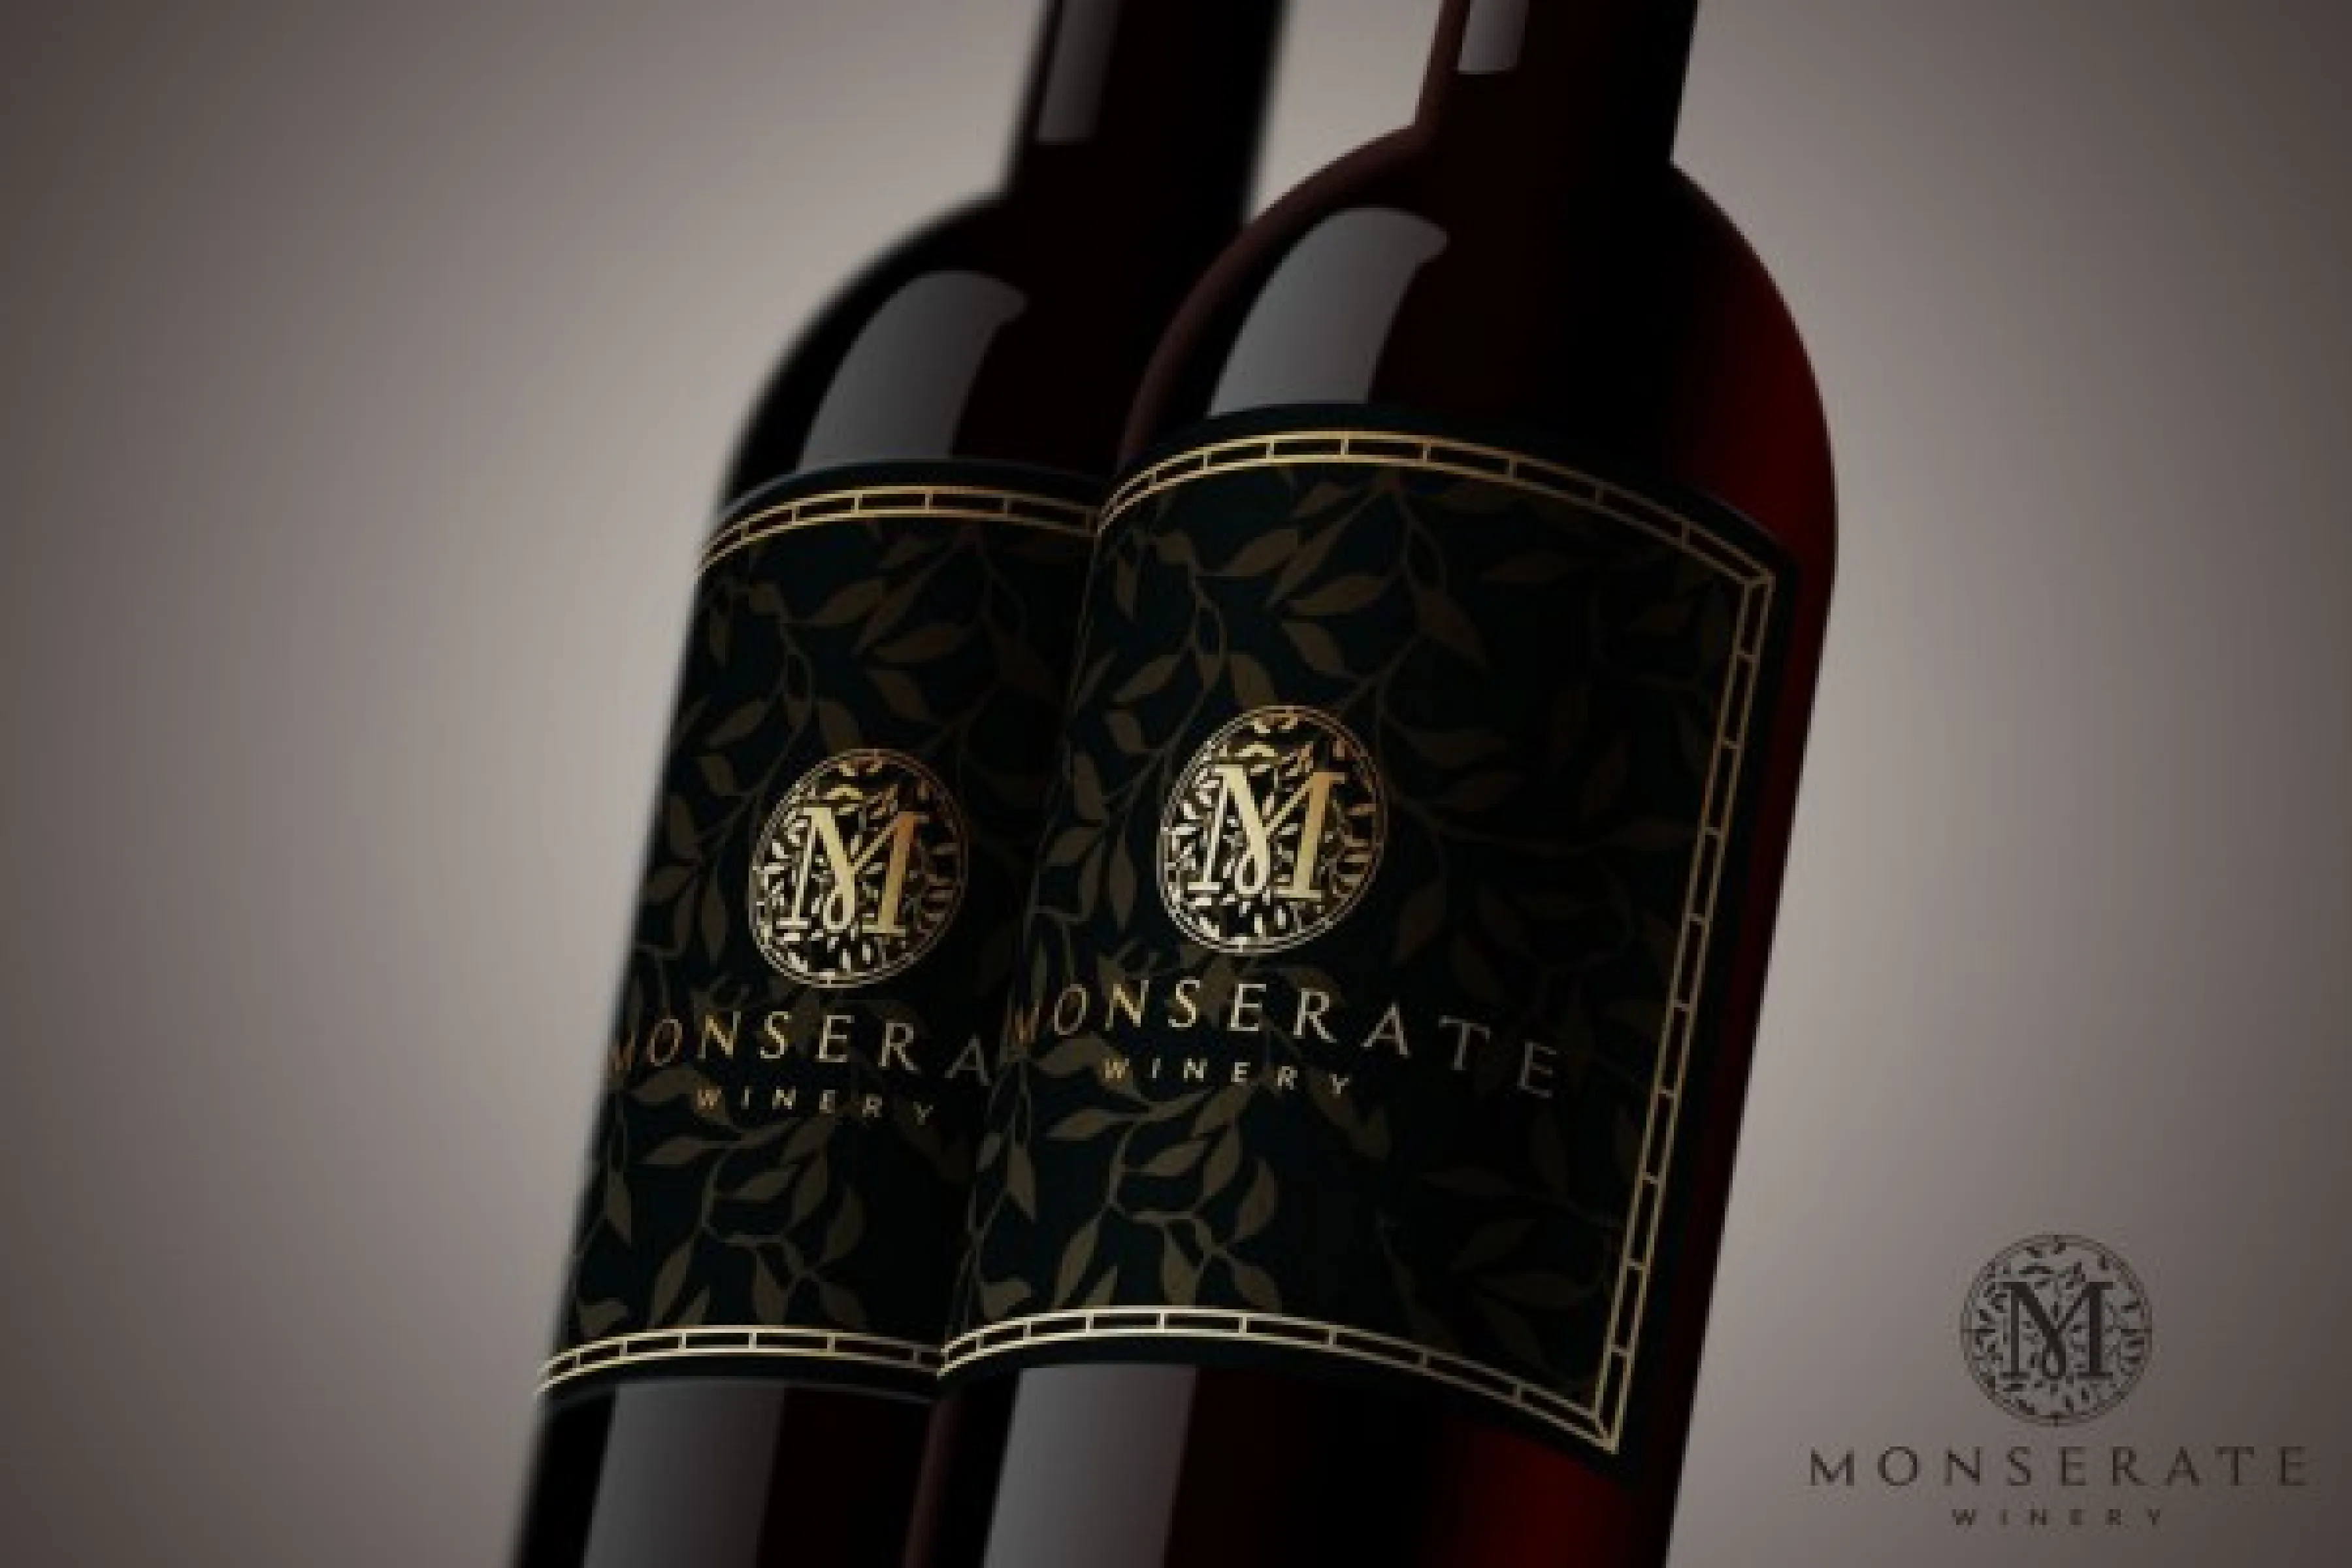 Monserate winery logo